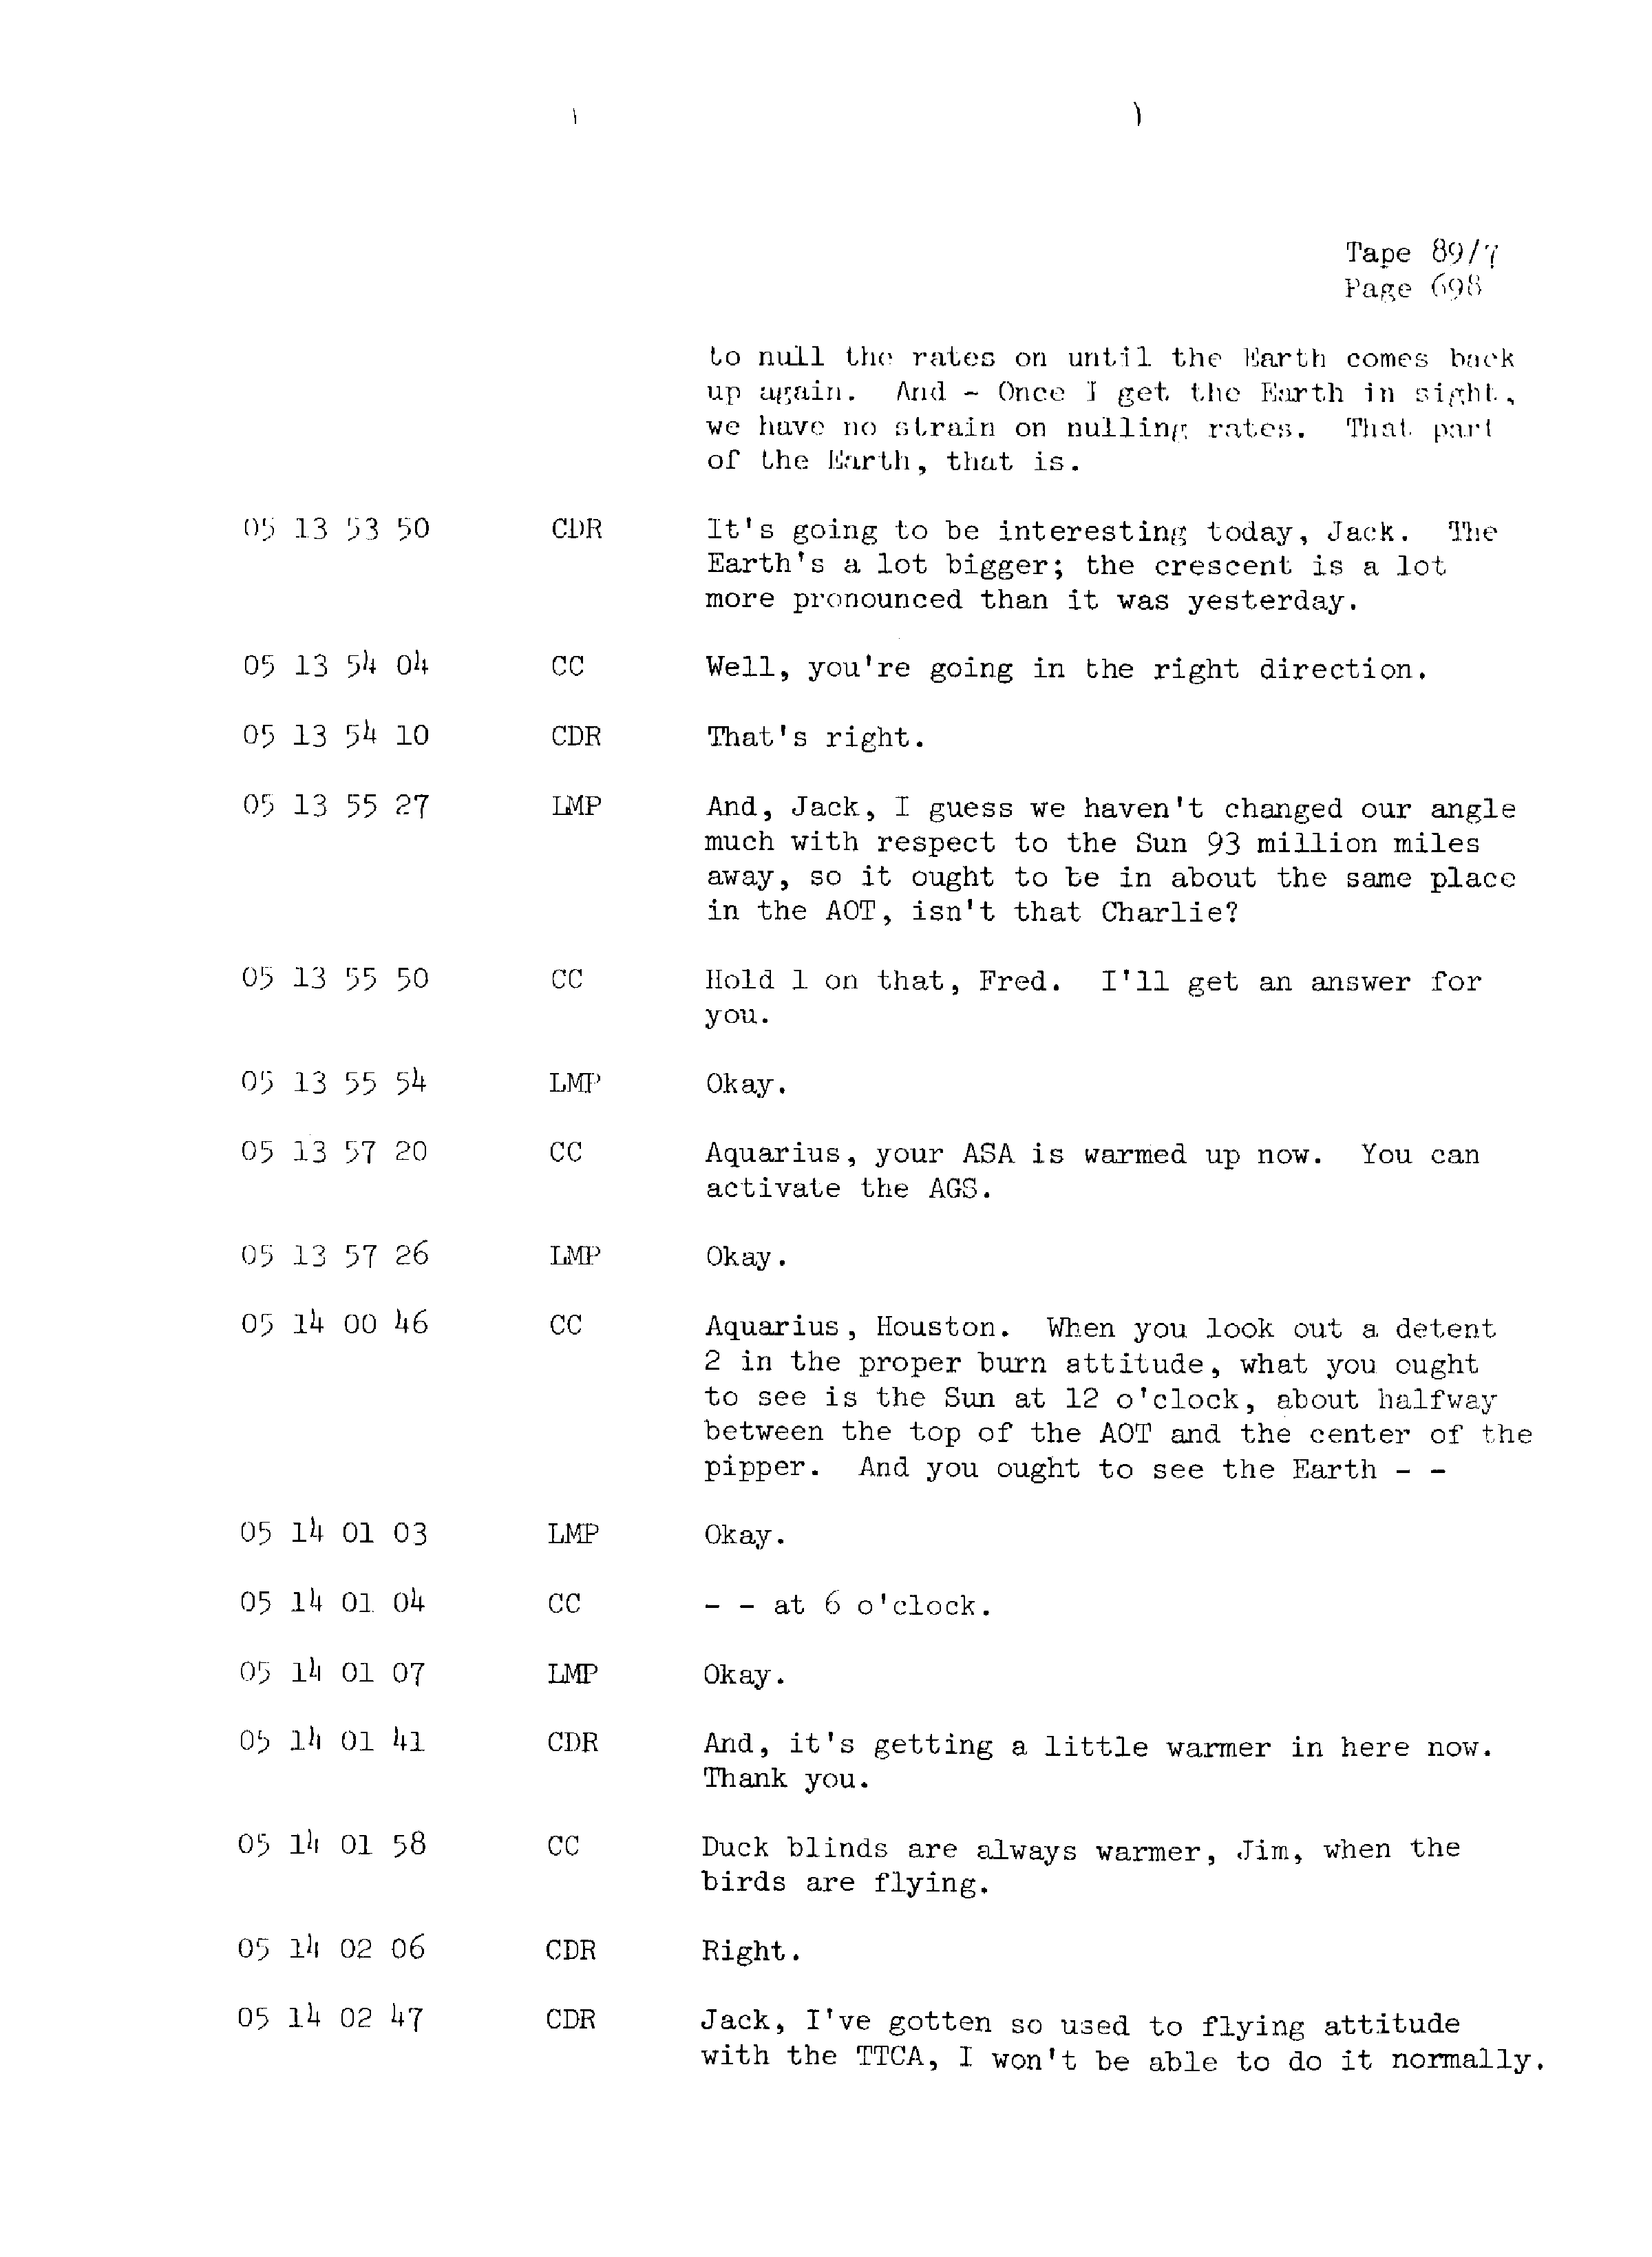 Page 705 of Apollo 13’s original transcript